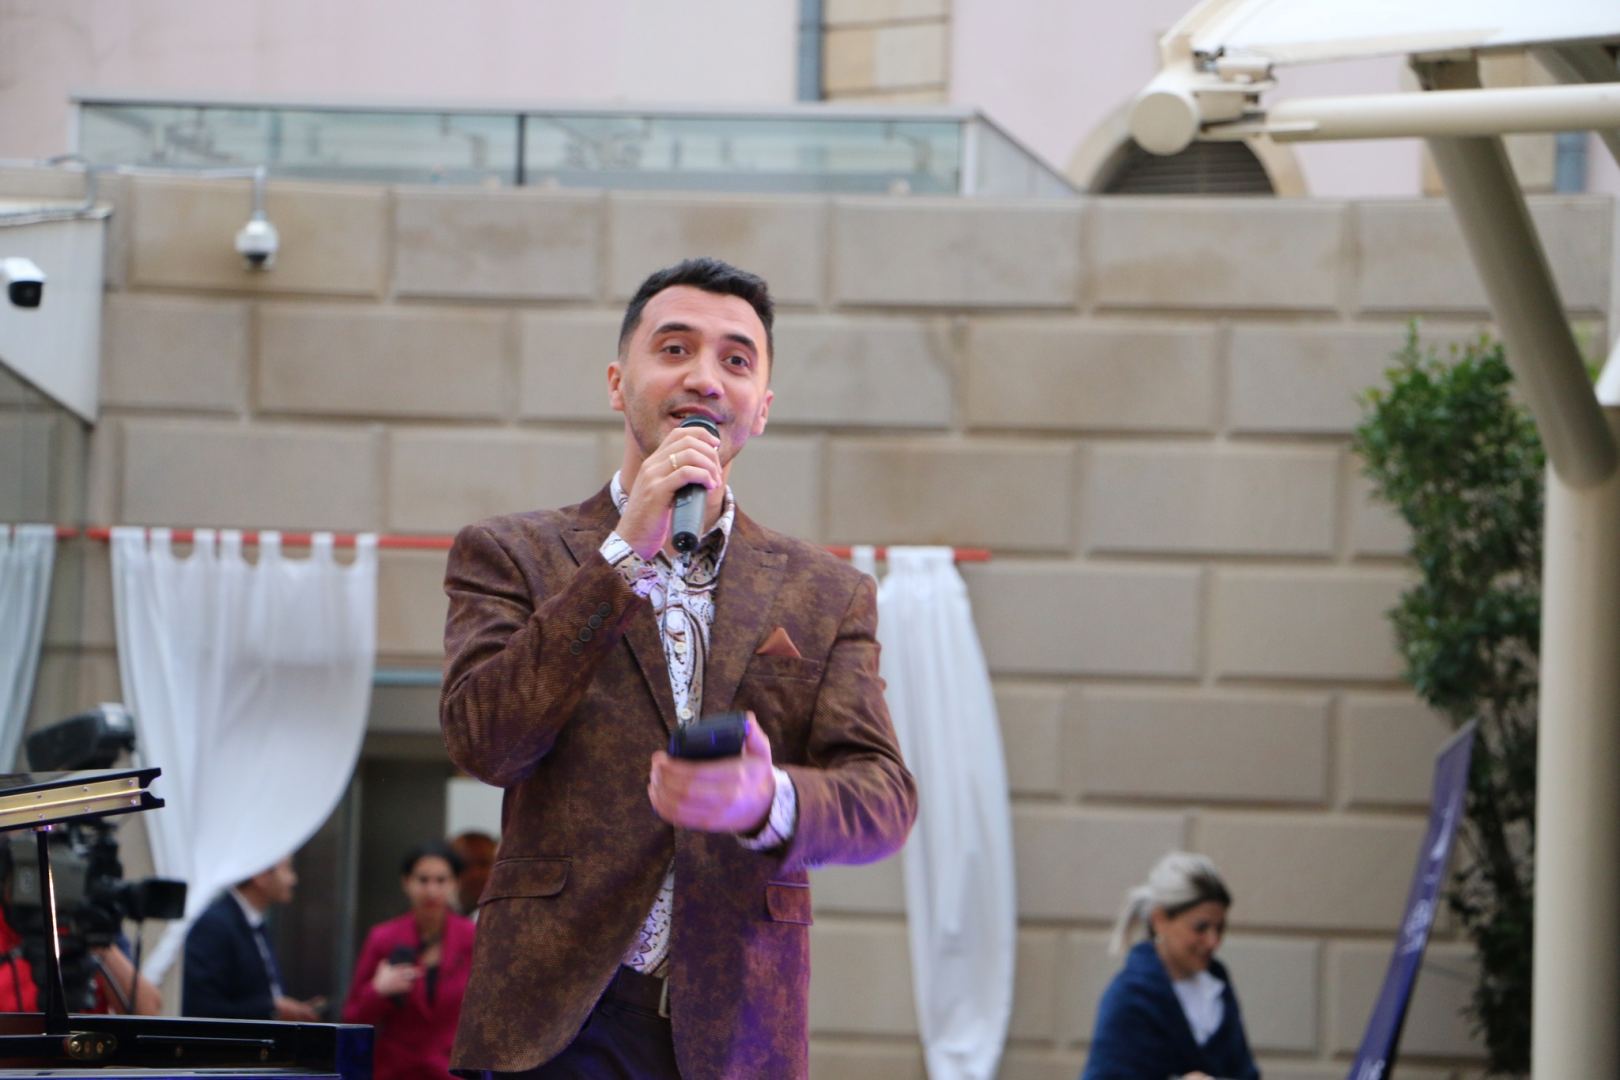 Norbert Kael və Vadim Abramov Bakı Piano Festivalının səhnəsində (FOTO/VİDEO)